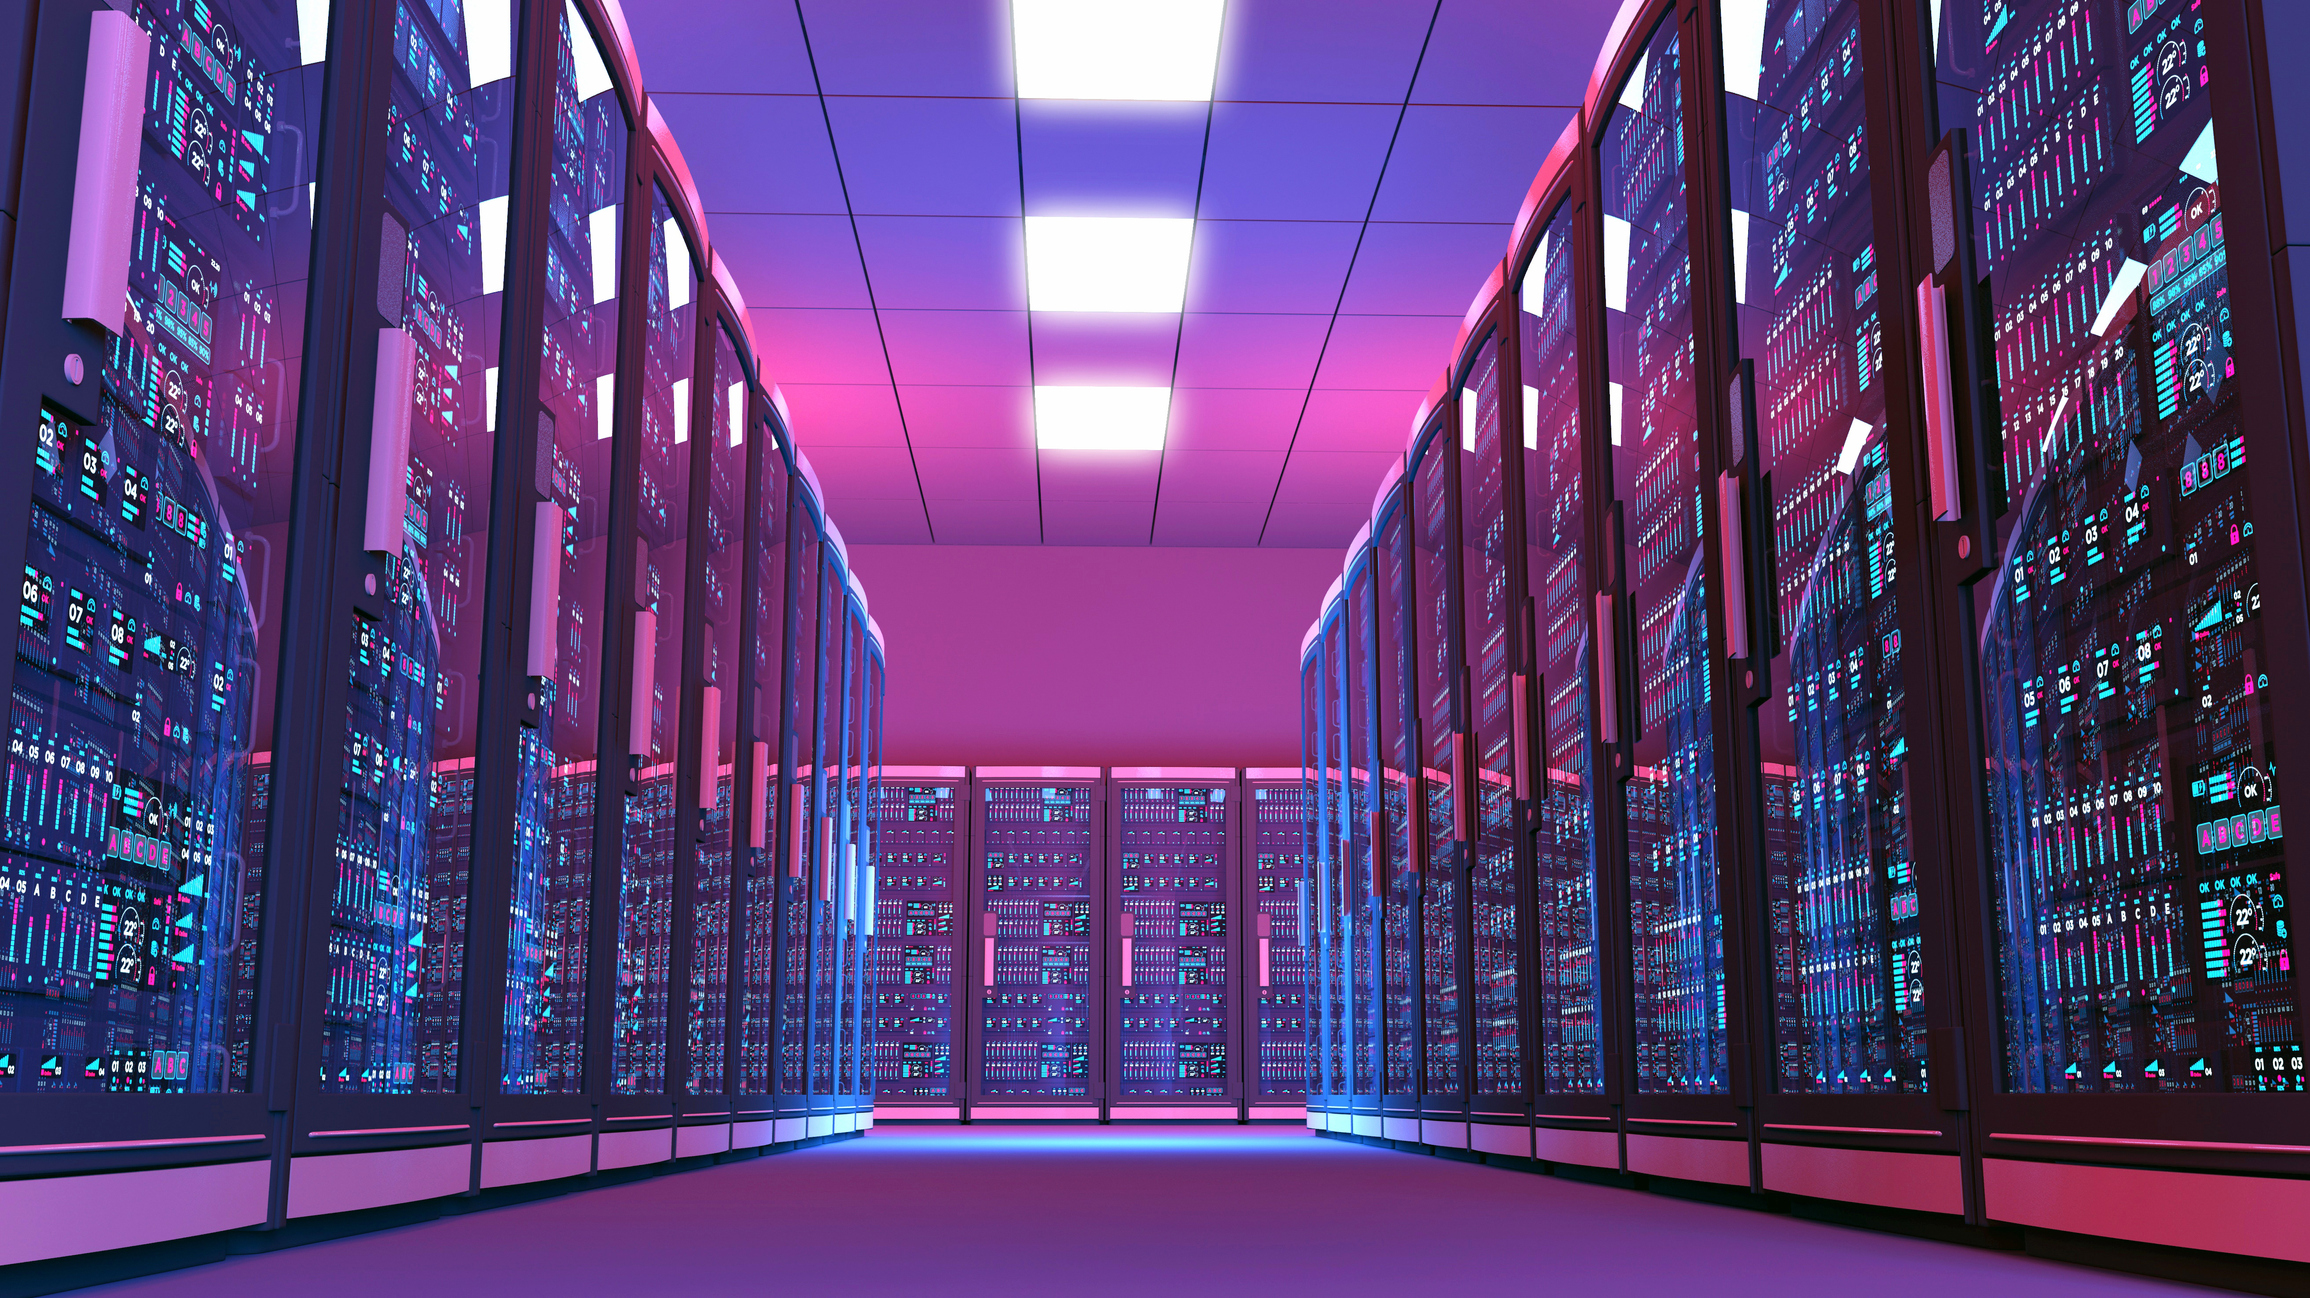 Data center server racks